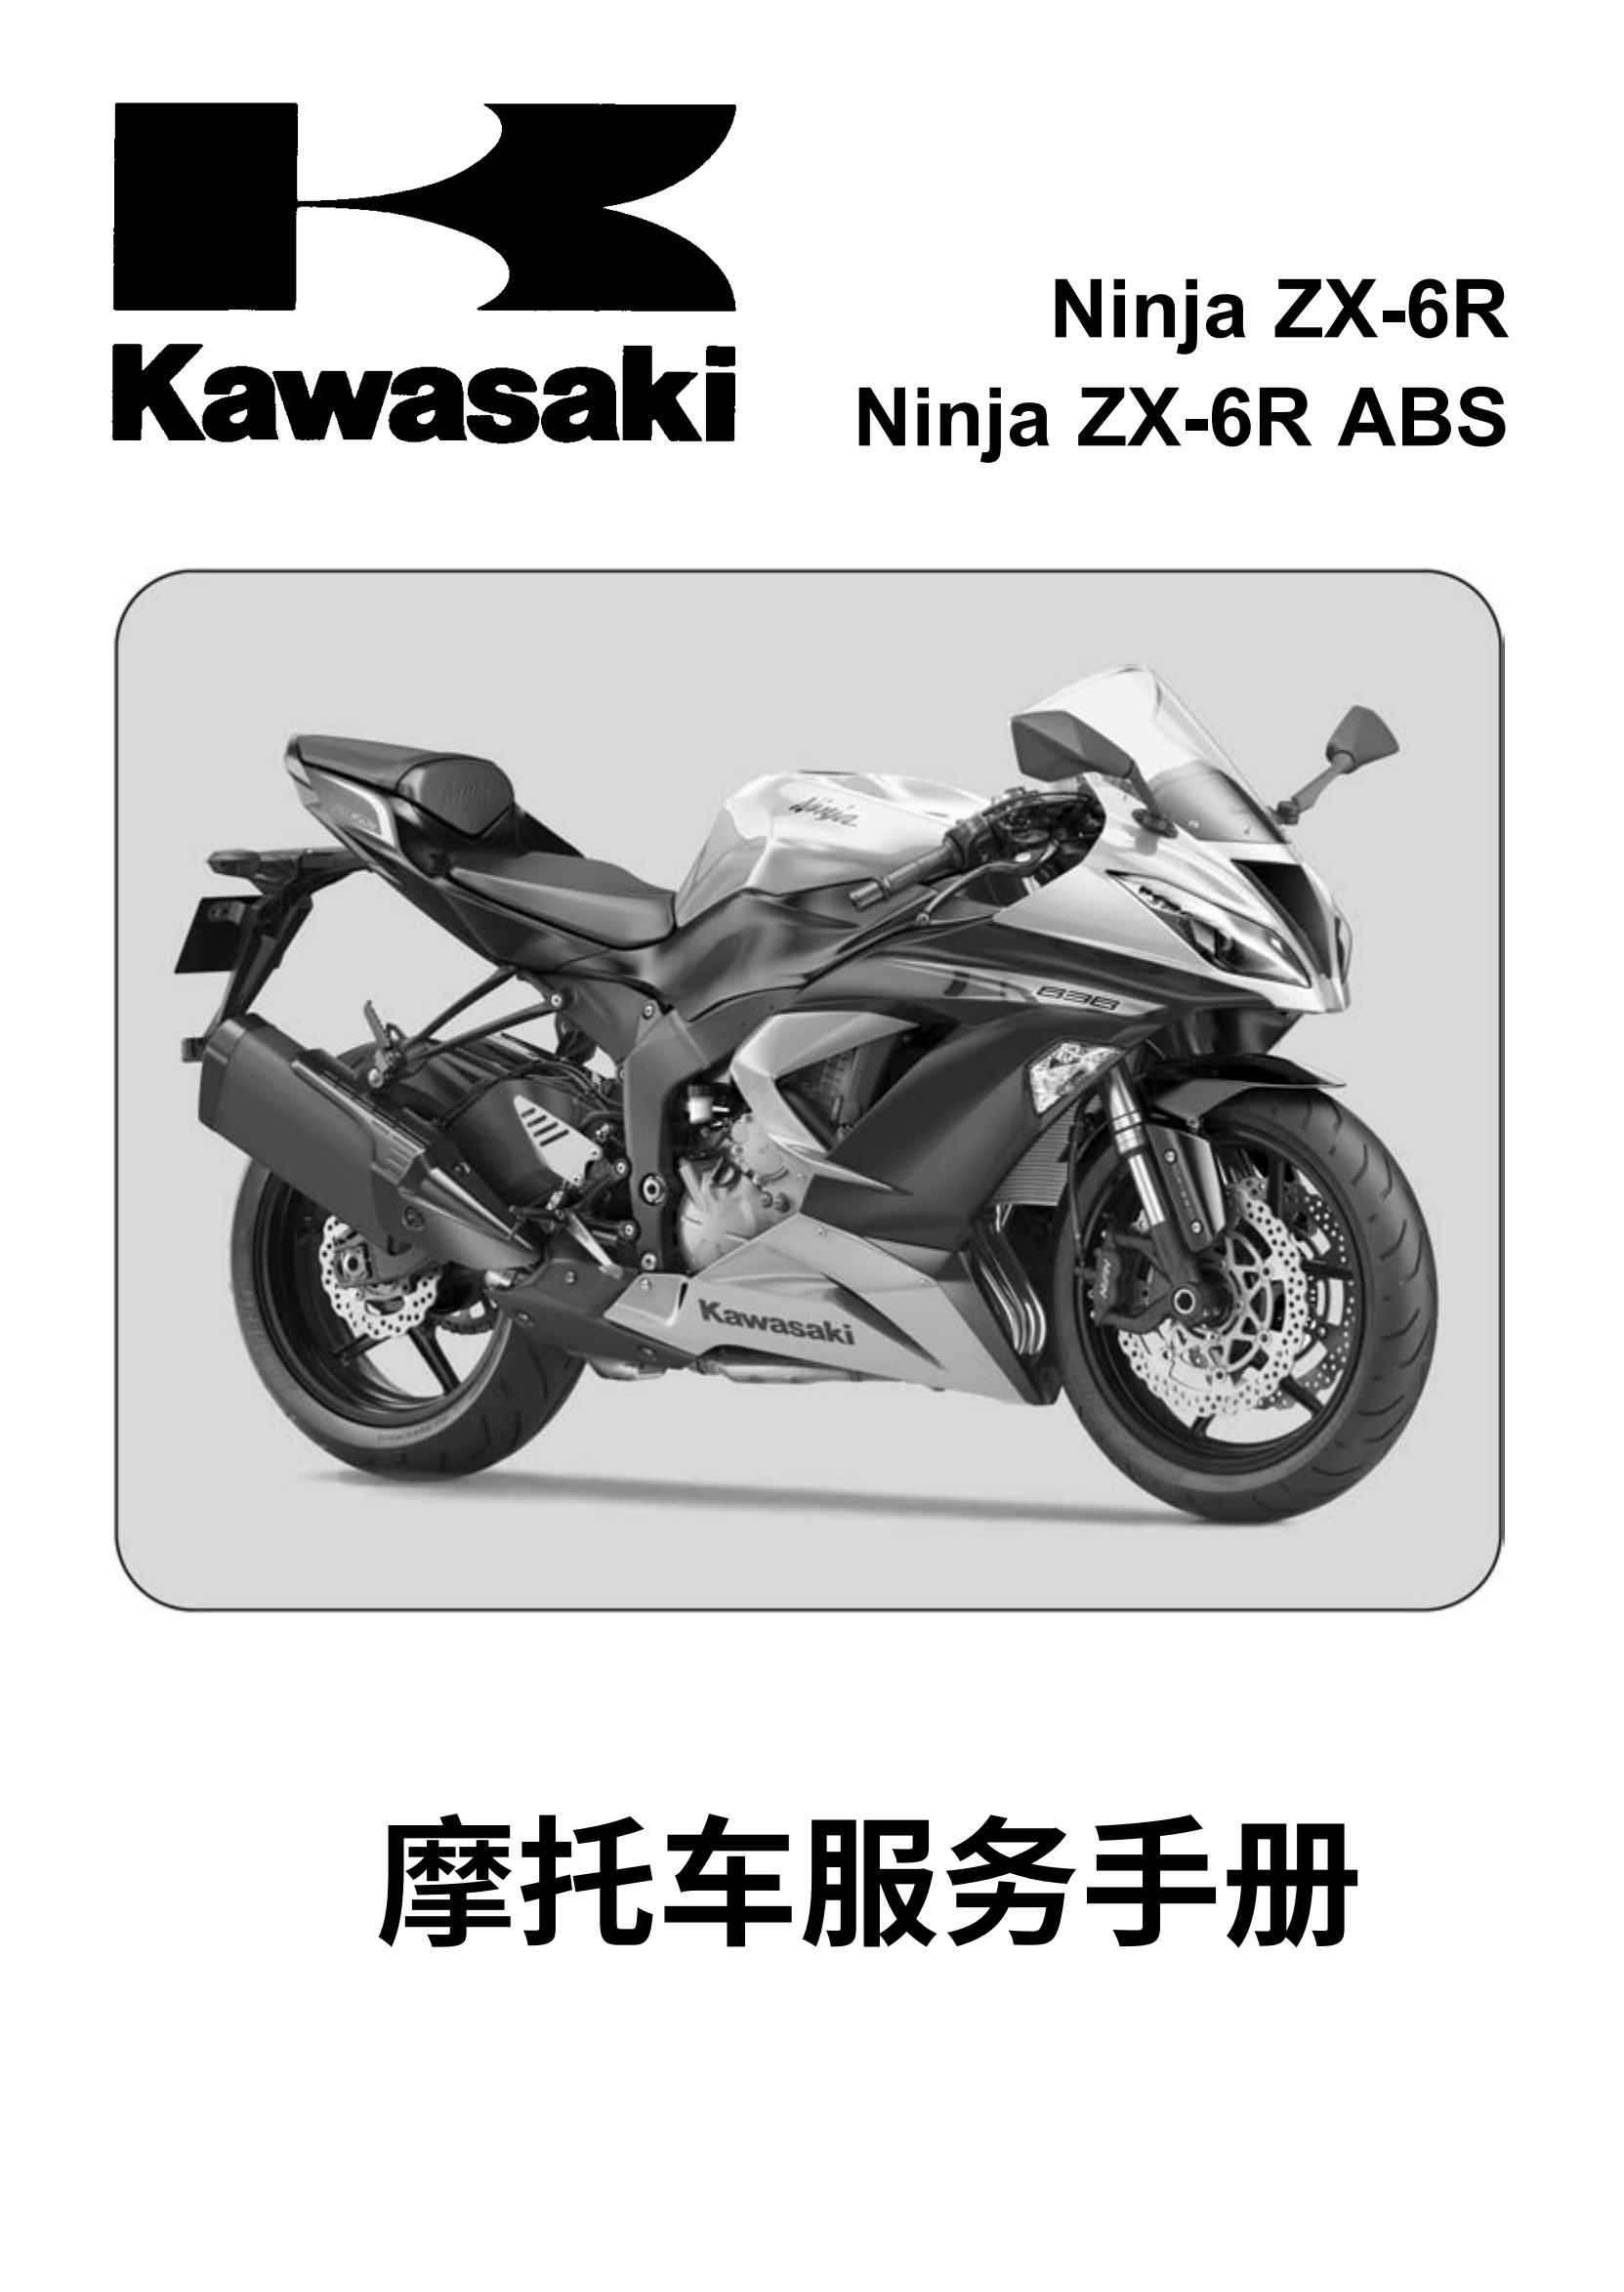 简体中文2013-2018年川崎ninja zx6r zx6r abs kawasaki ninja zx-6r ABS维修手册插图